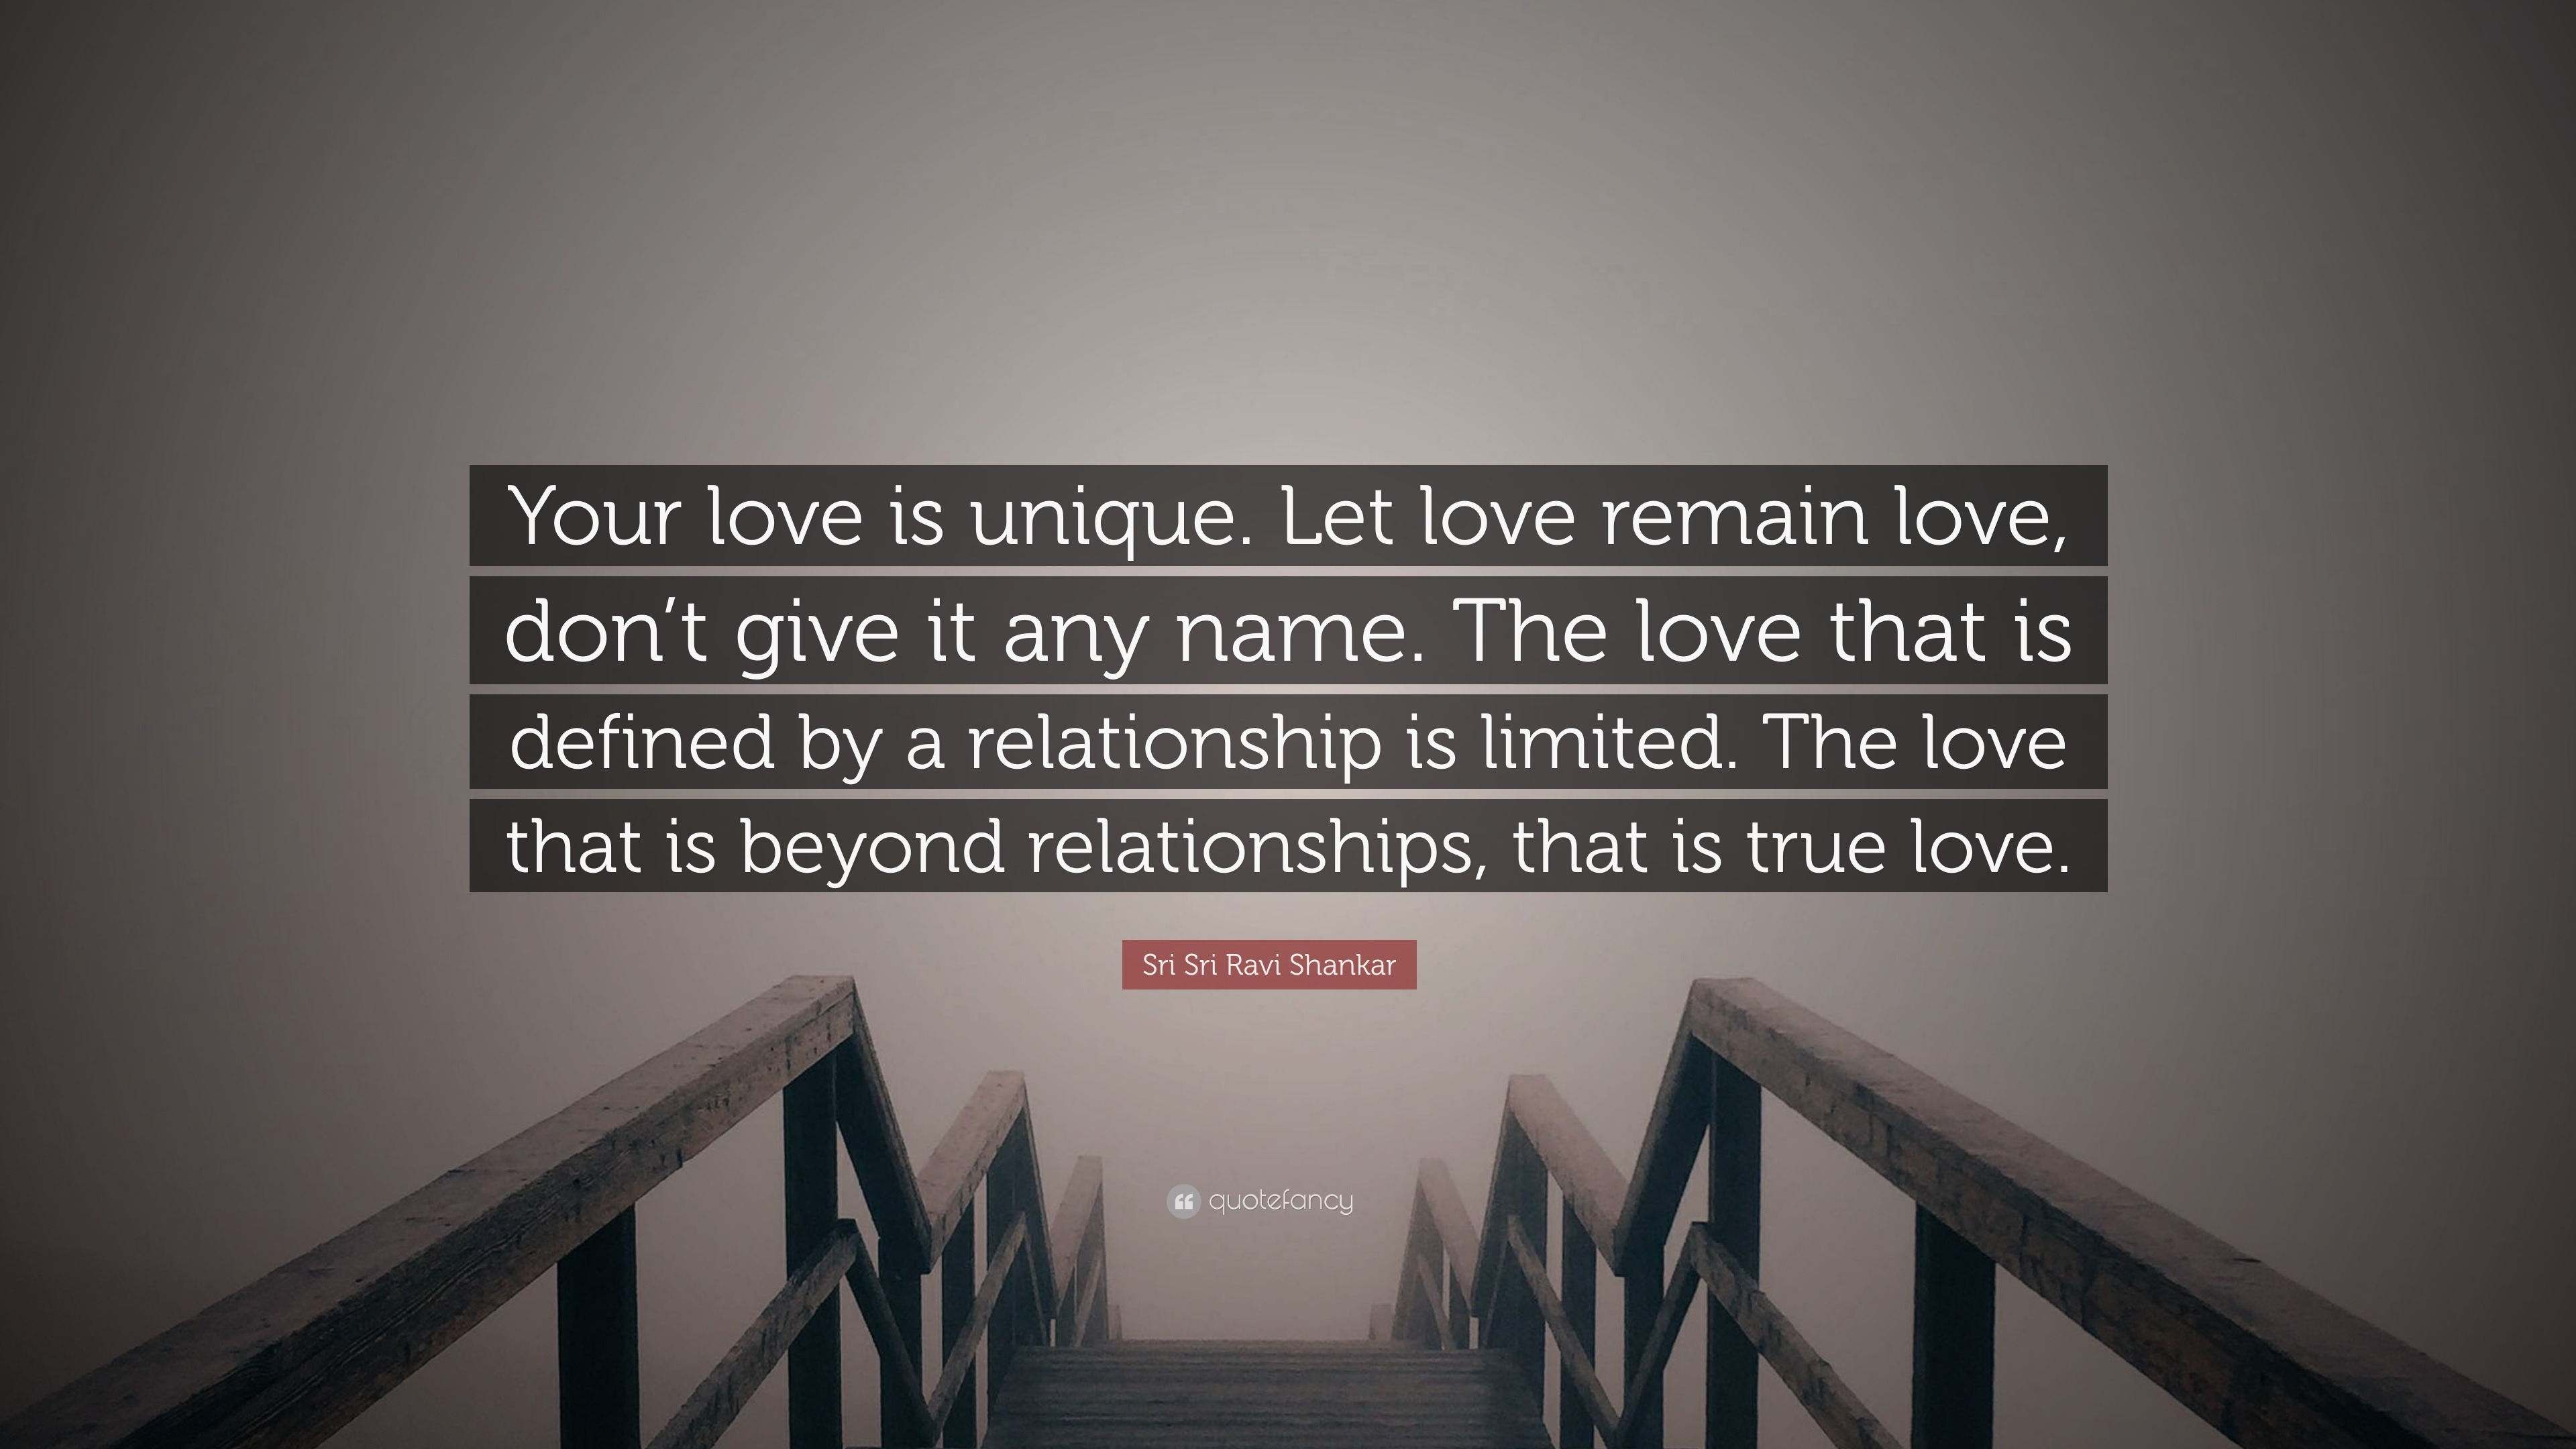 Sri Sri Ravi Shankar Quote “Your love is unique Let love remain love